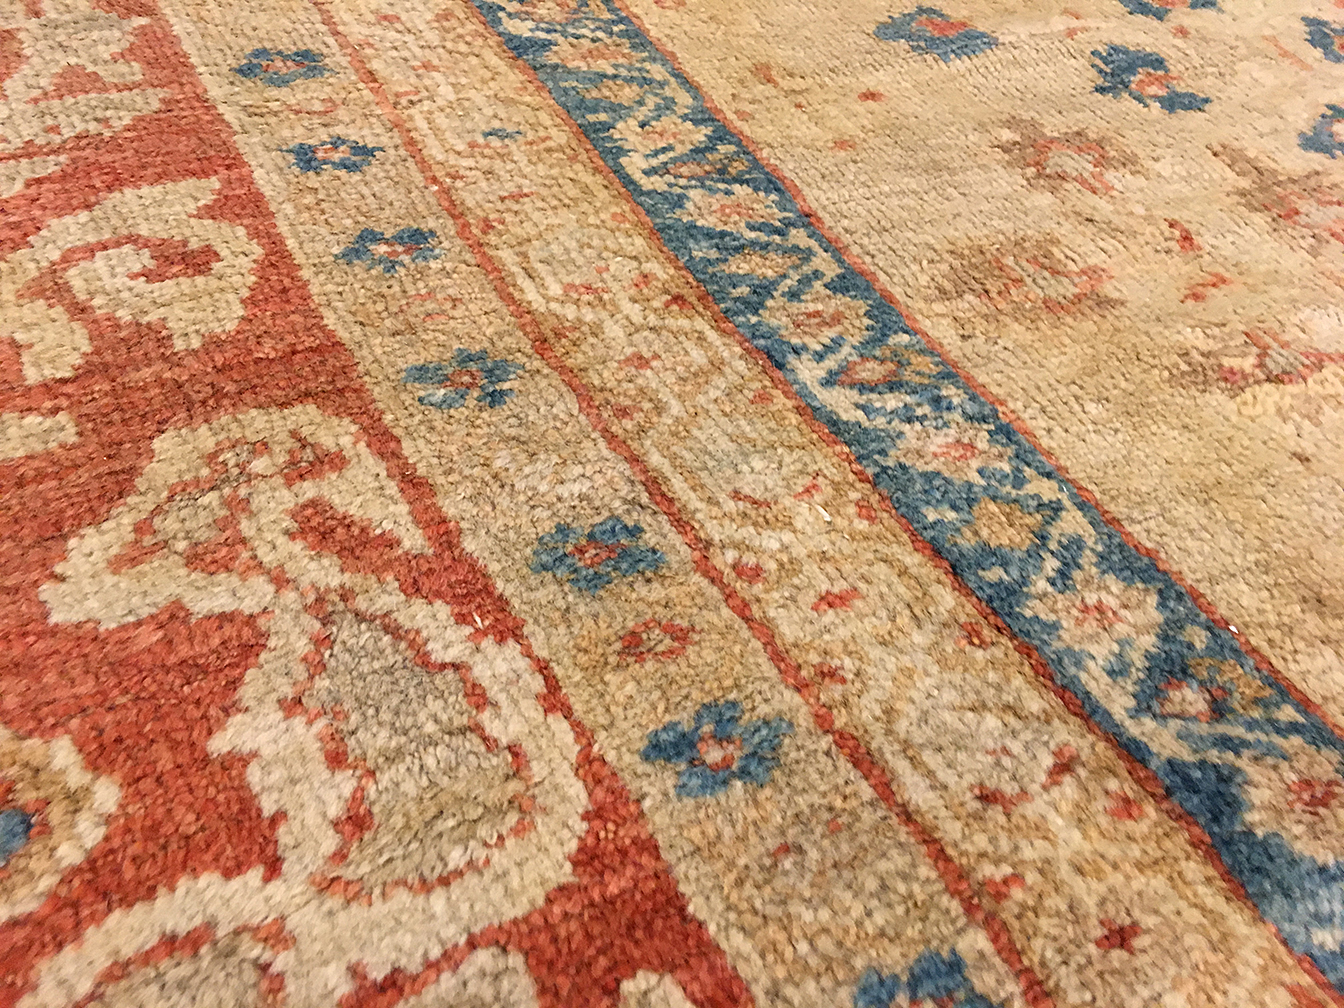 Antique sultan abad Carpet - # 53156